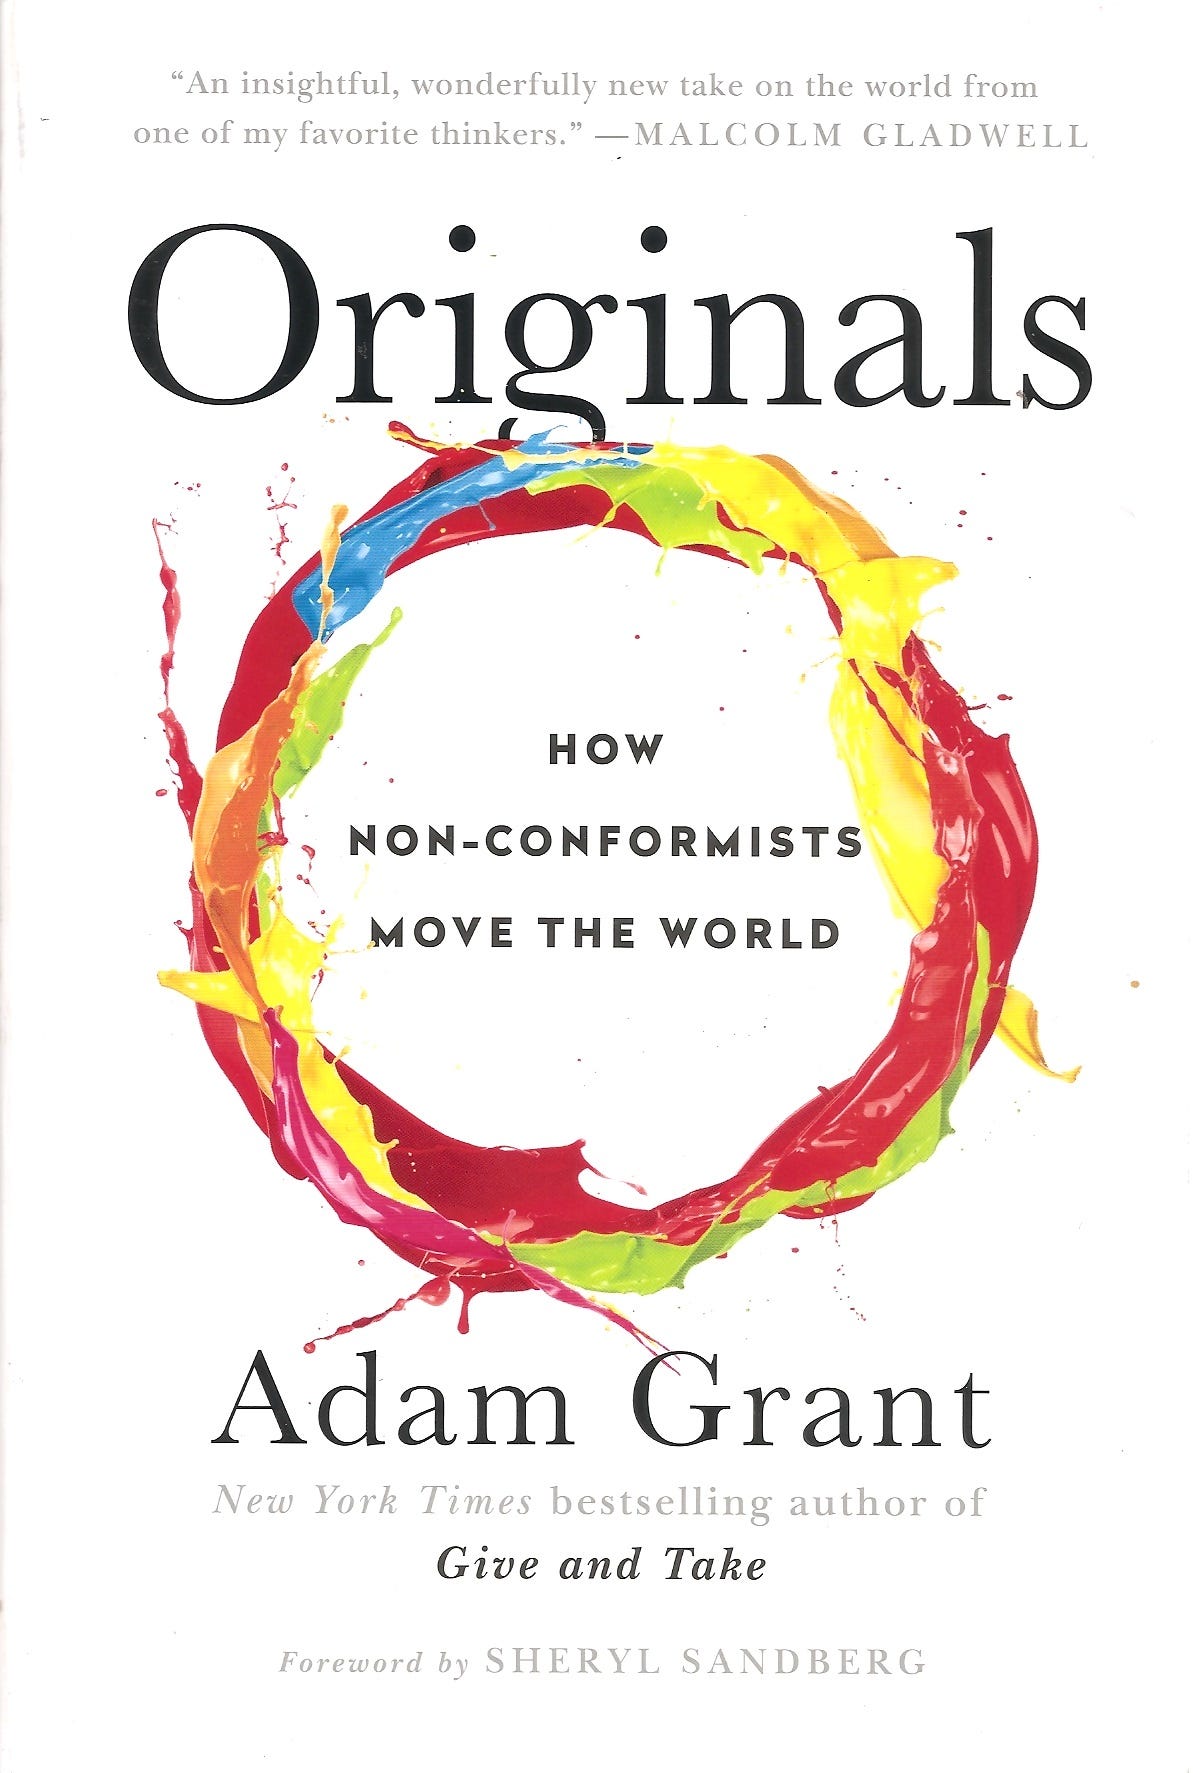 Mi TOP 6 de Libros en 2016. I. Adam Grant: Originals si te interesa… | by  Luis Salas | Medium